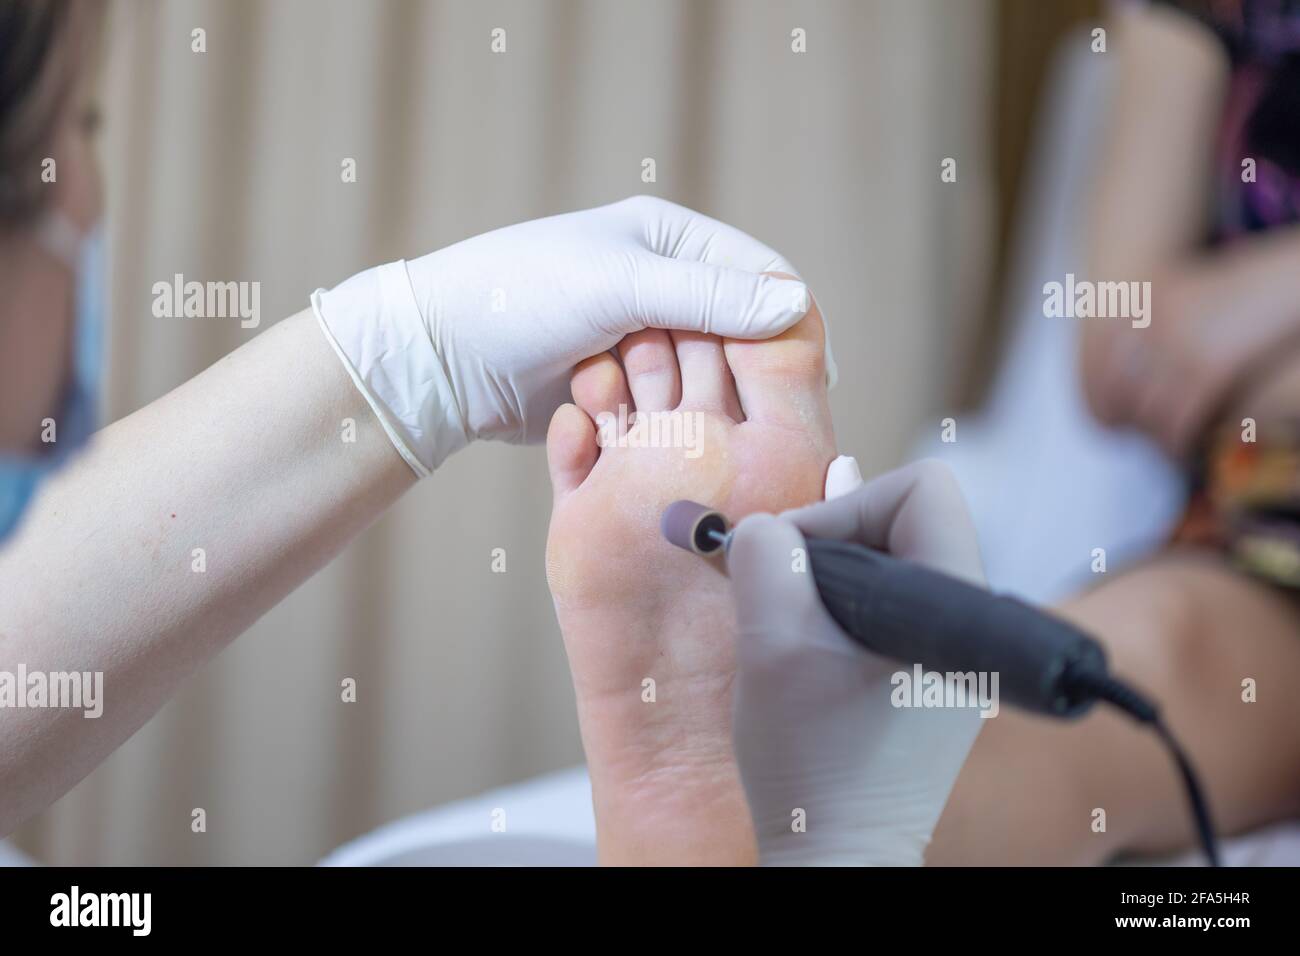 Photo du stock de traitement du pied femelle en cours de pédicure Banque D'Images